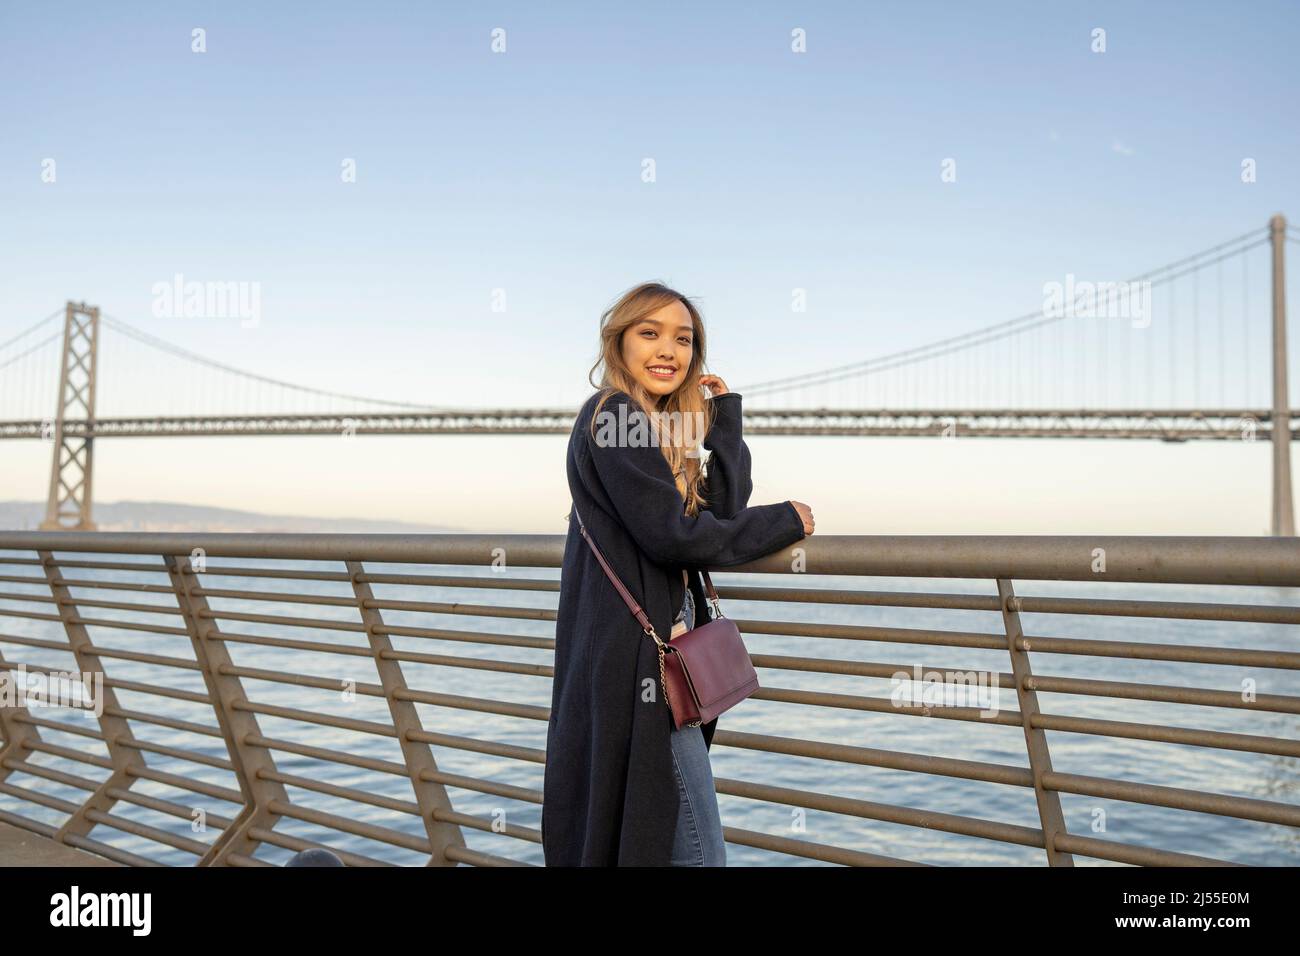 Am späten Nachmittag wurden Halbkörperportraits einer jungen Frau mit der Oakland Bay Bridge und der San Francisco Bay im Hintergrund | Lifestyle Travel in the City Stockfoto